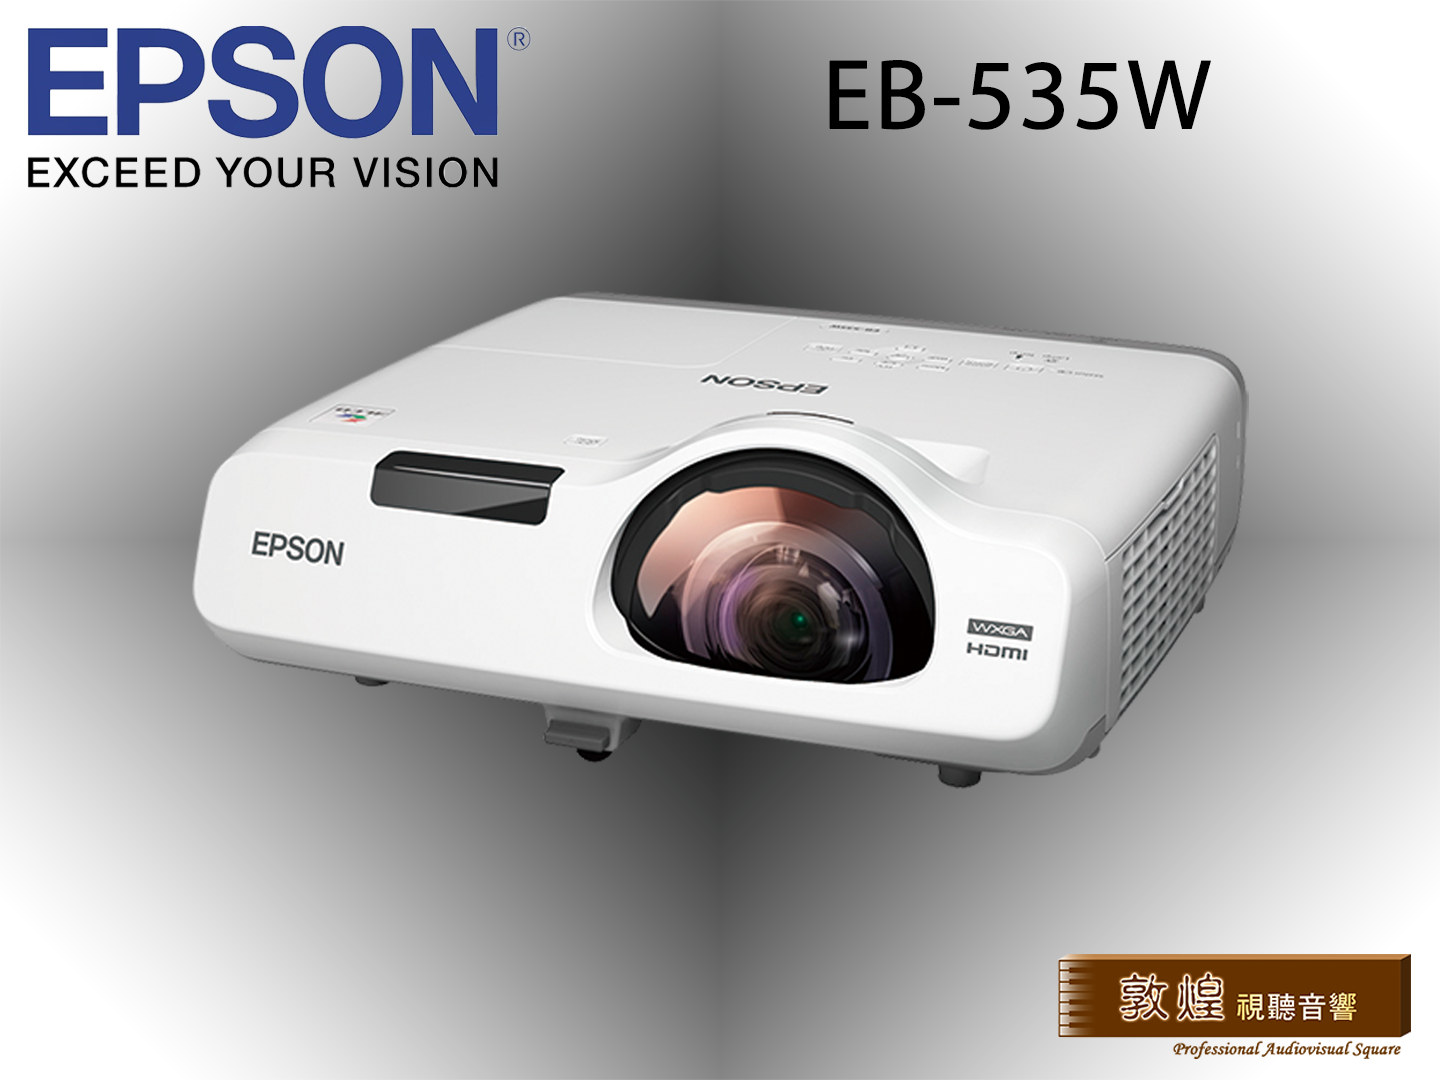 敦煌音響- EPSON EB-535W